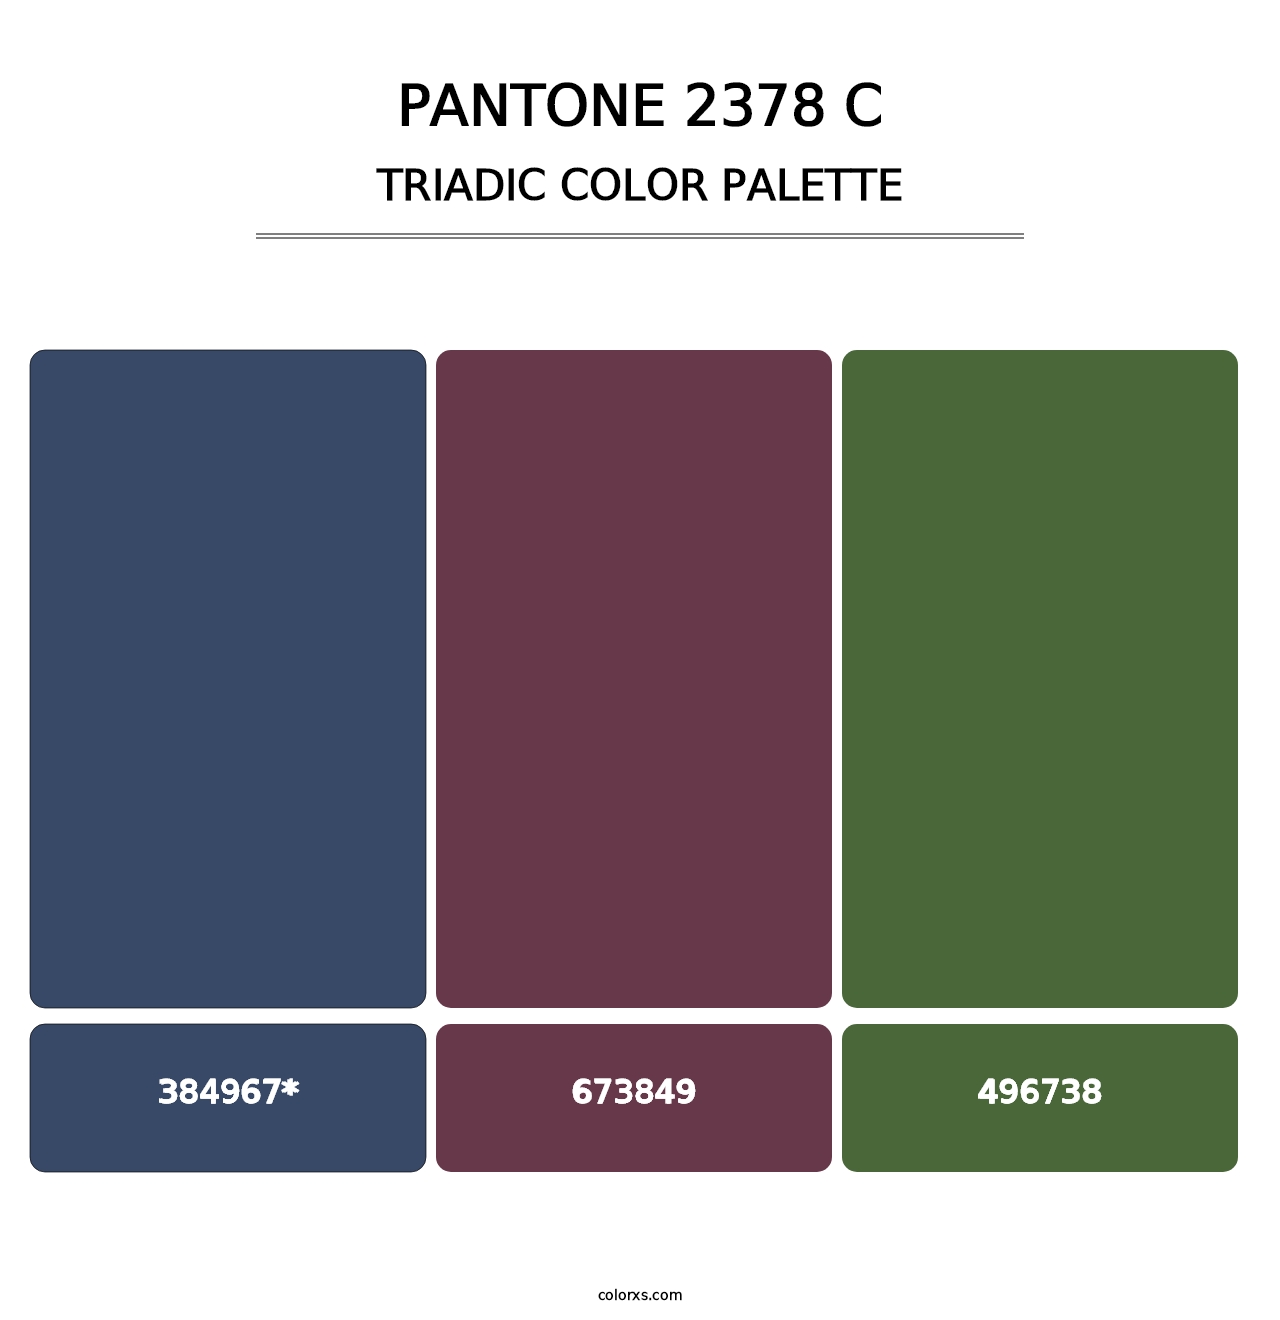 PANTONE 2378 C - Triadic Color Palette